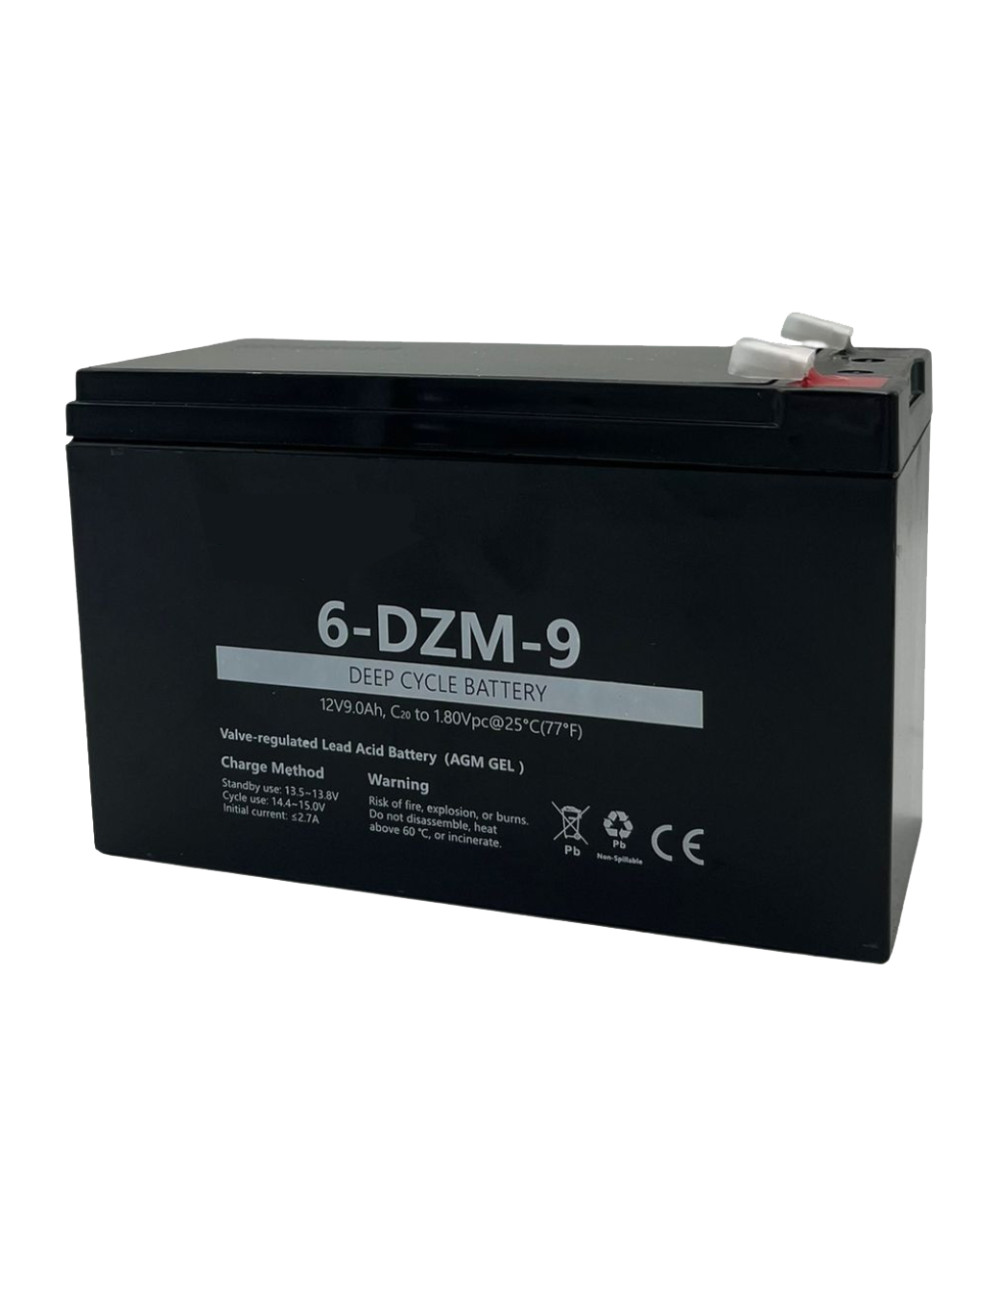 Batería 12V 9Ah C20 ciclo profundo 6-DMZ-9 - 6DZM9 -  -  - 1